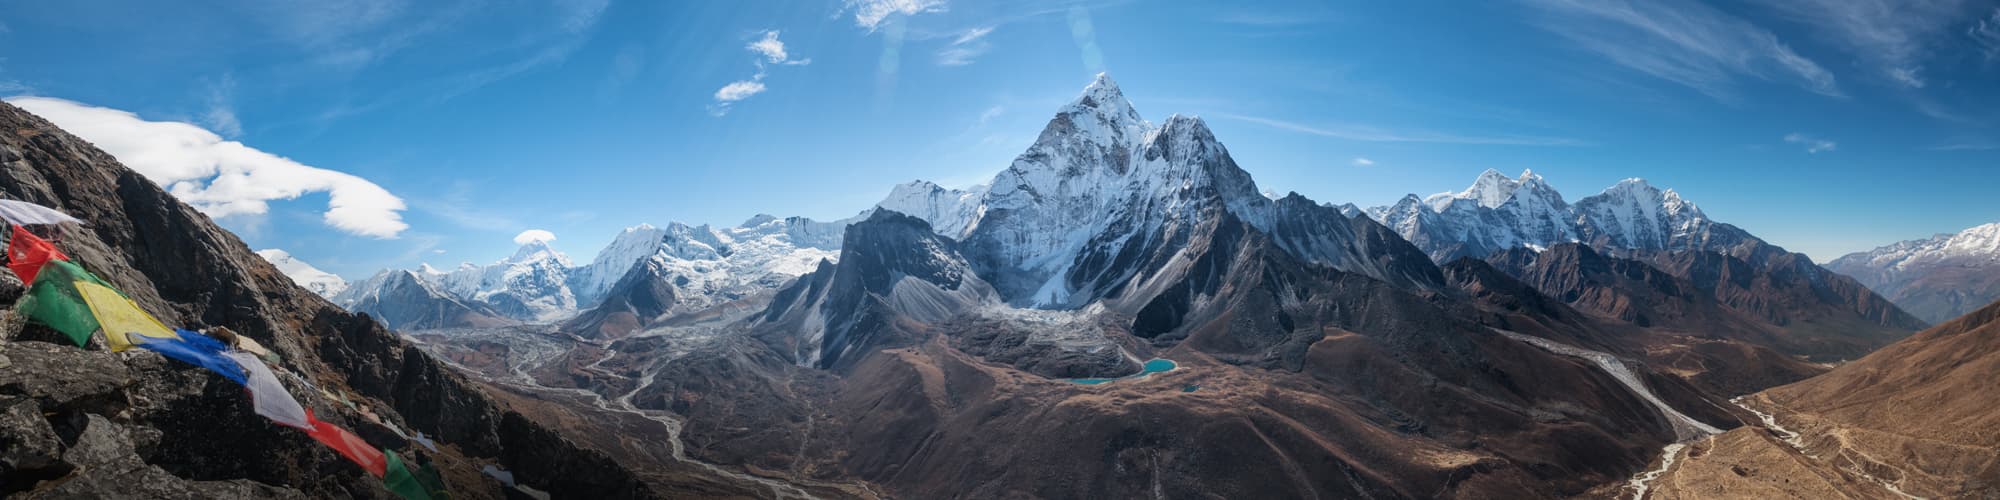 Randonnée Inde Himalayenne © Alex Shestakov / Adobe Stock